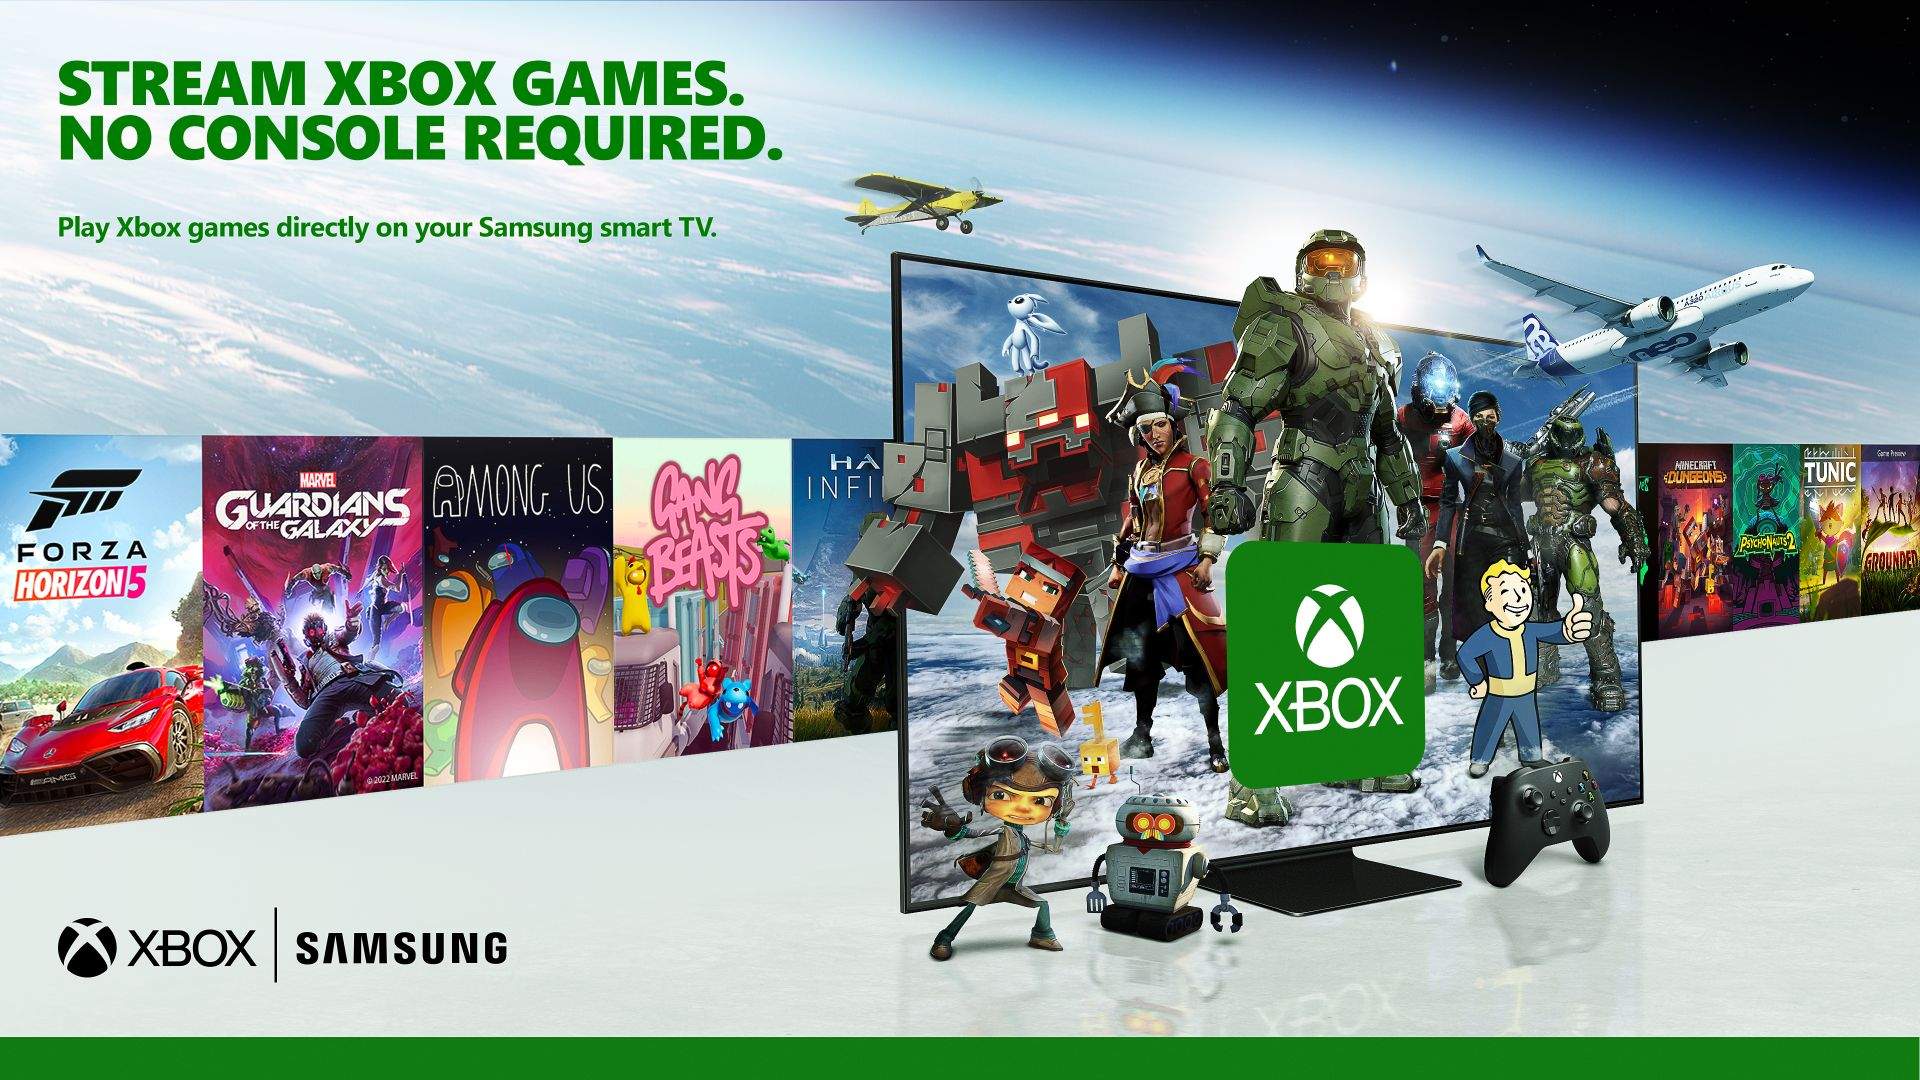 Todos jogos disponíveis no Xbox Cloud Gaming através da nuvem